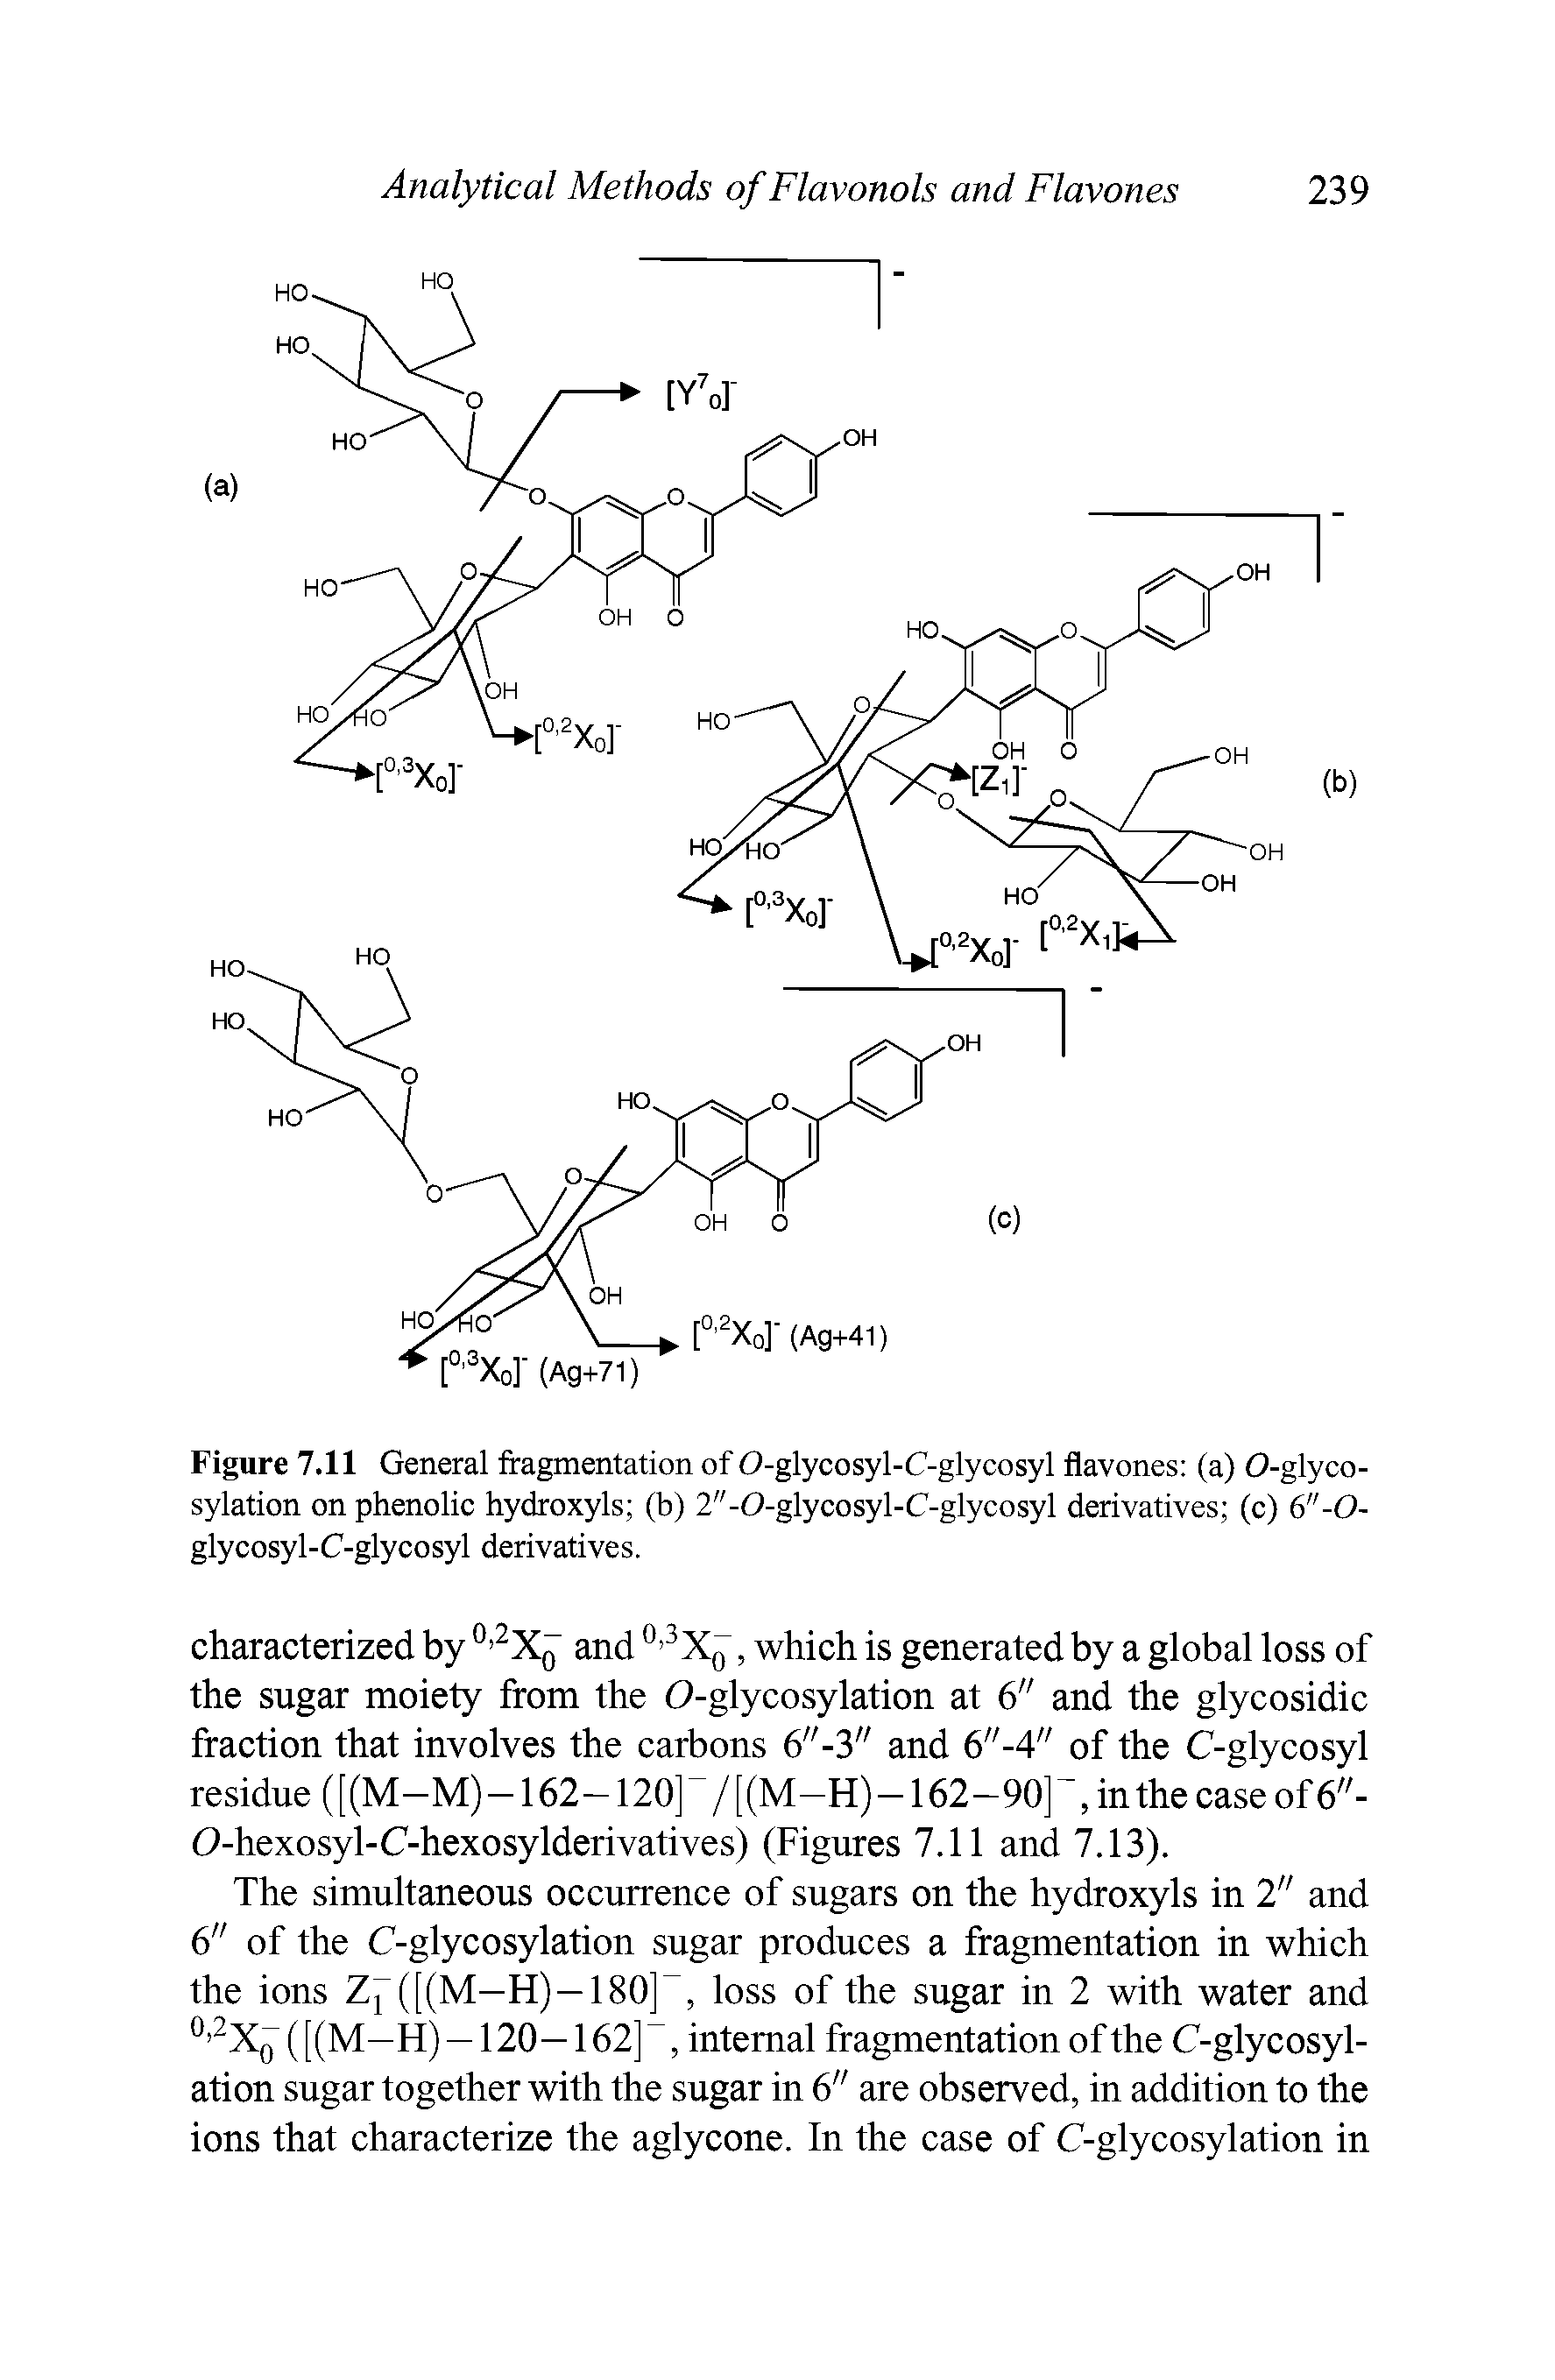 Figure 7.11 General fragmentation of 0-glyeosyl-C-glycosyl flavones (a) 0-glyco-sylation on phenolie hydroxyls (b) 2"-0-glyeosyl-C-glycosyl derivatives (e) 6"-0-glyeosyl-C-glyeosyl derivatives.